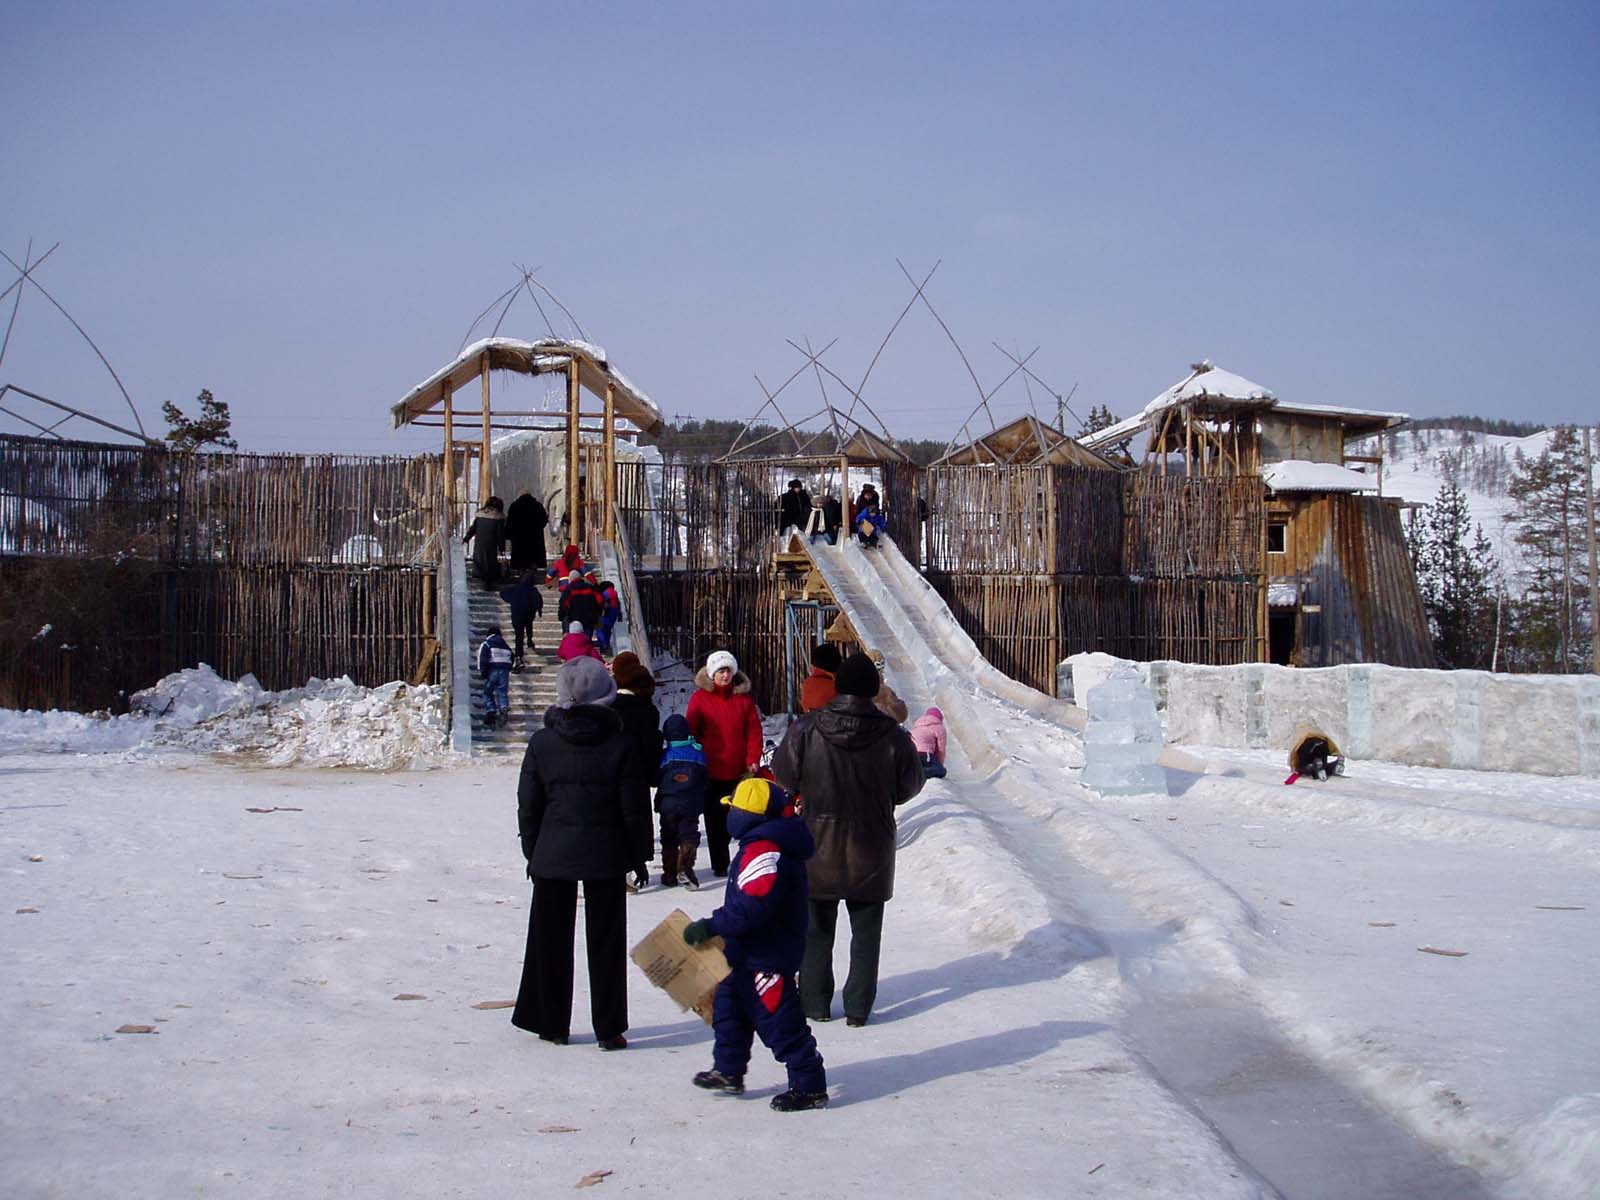 Этнокомплекс "Ытык Хая" ("Три мамонта") в марте 2004 года